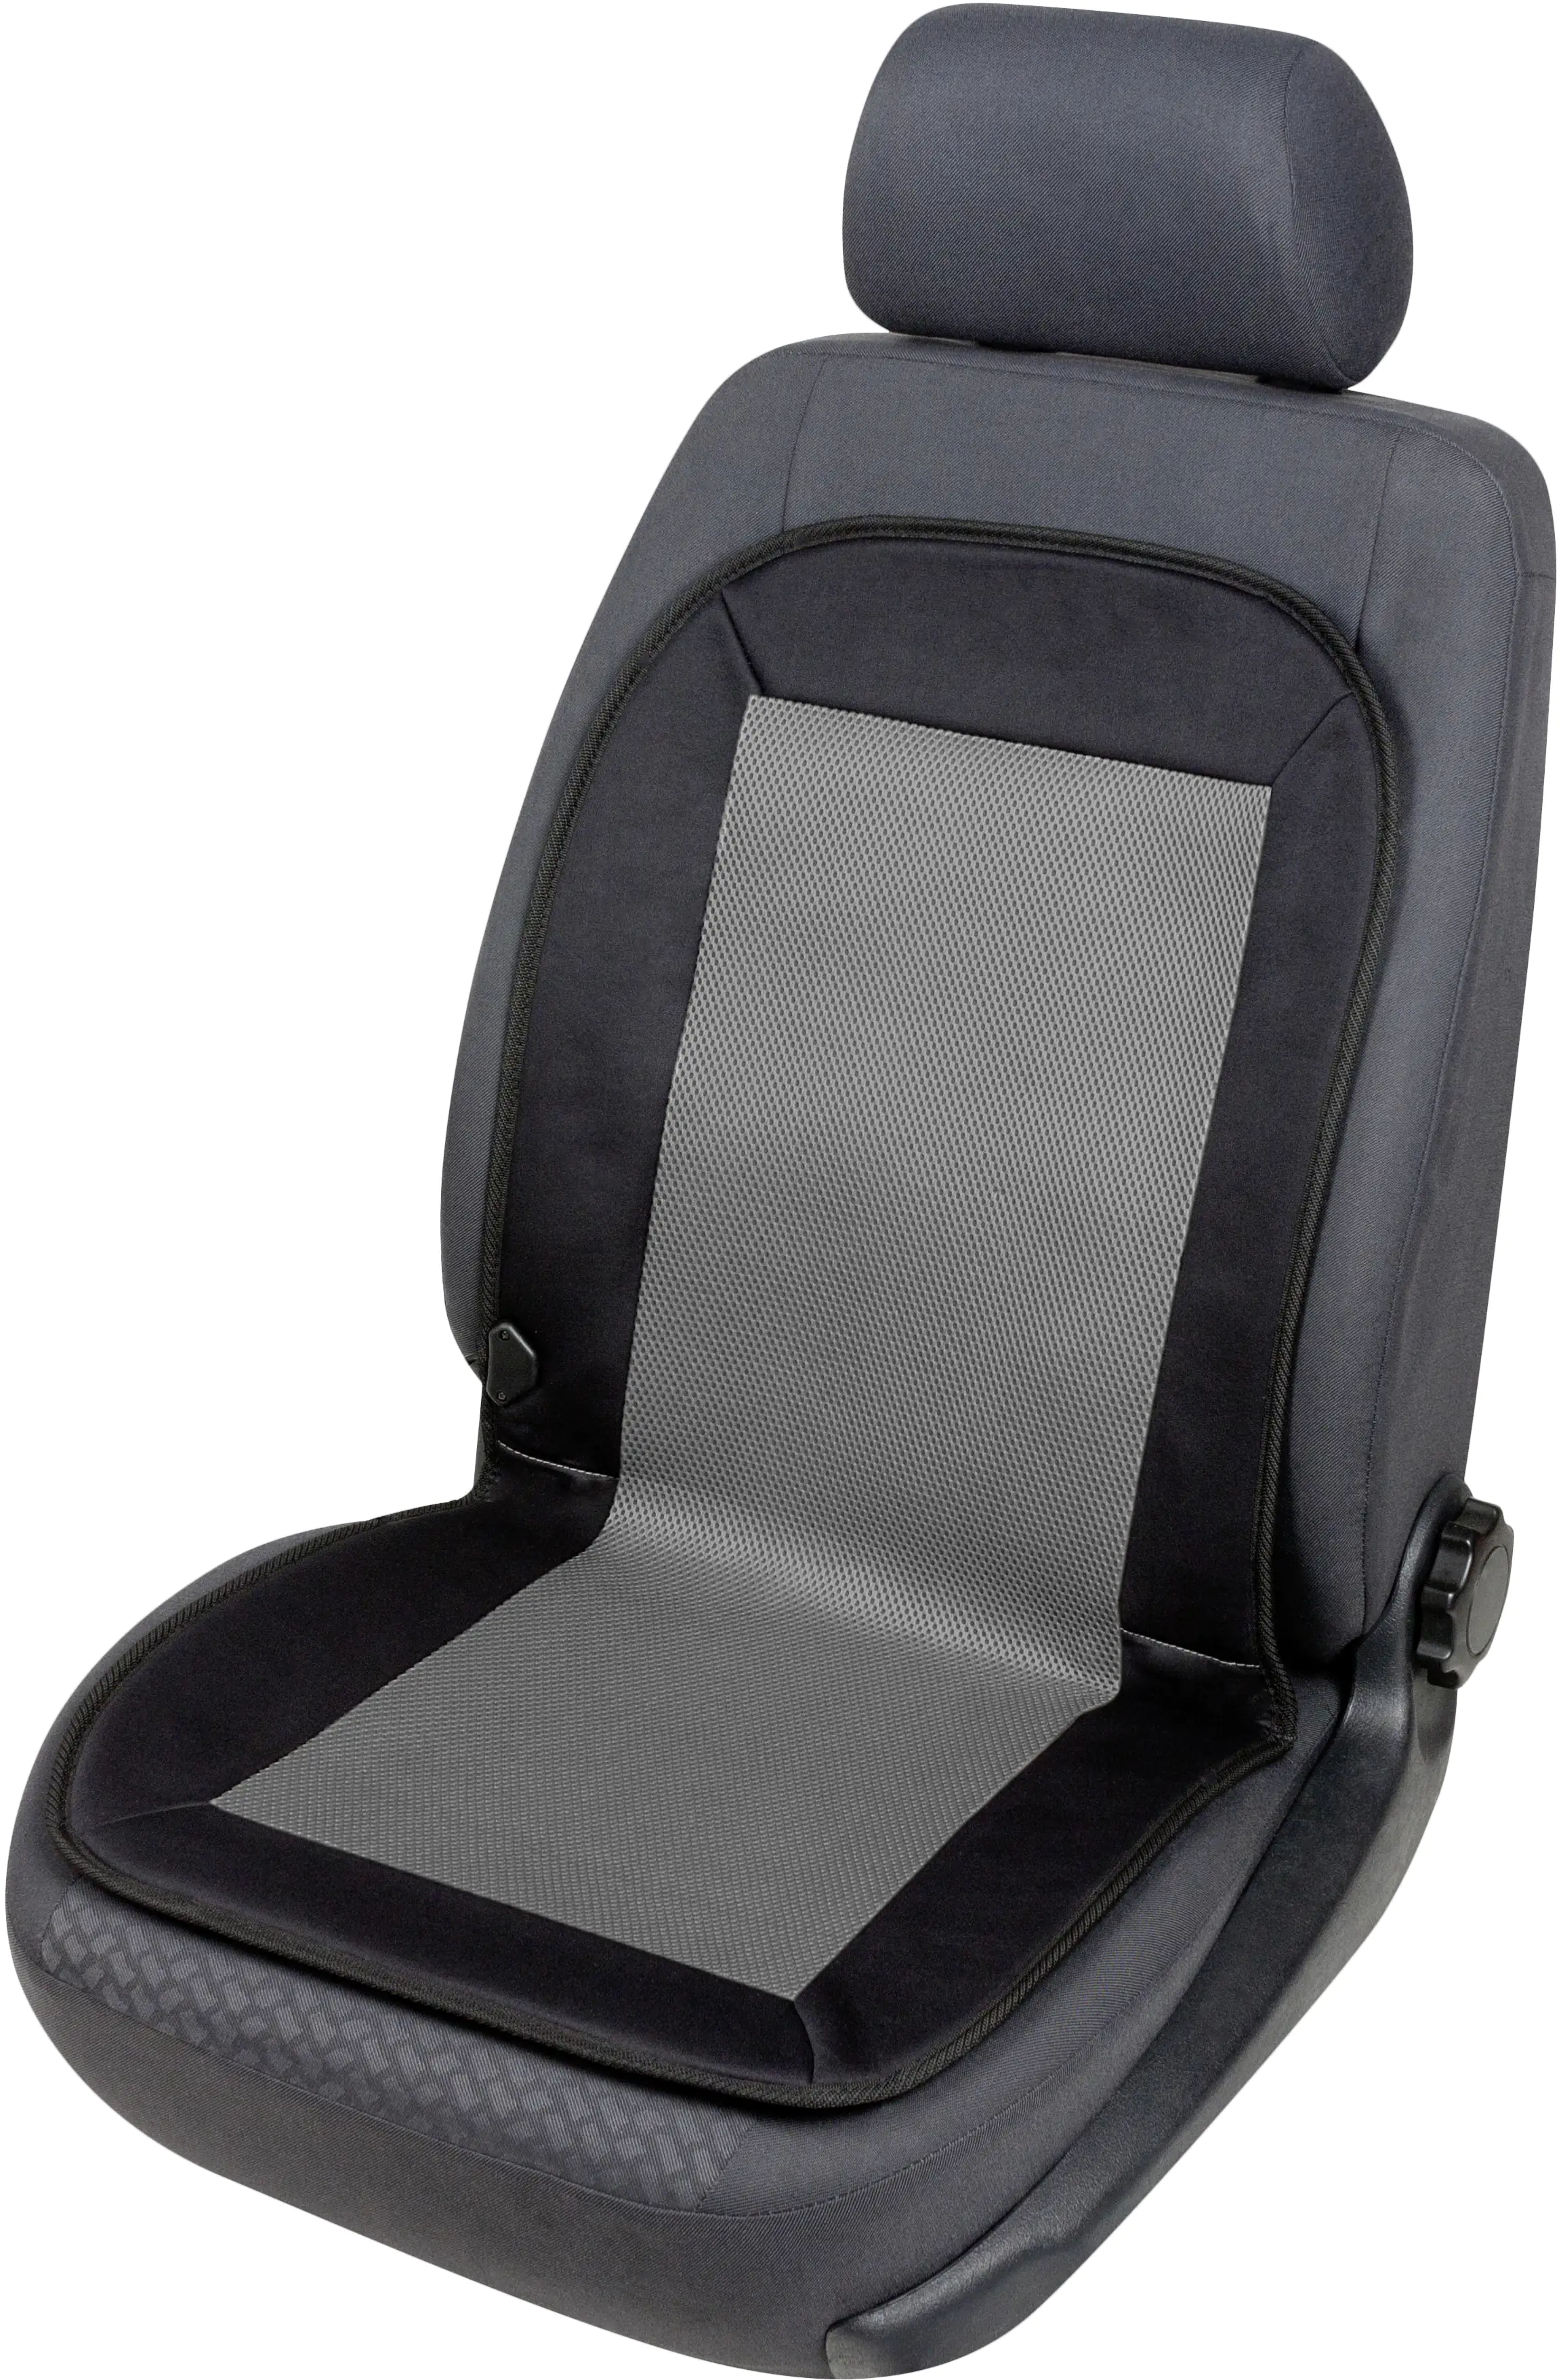 Walser Autositz Heizkissen Sitzheizung Carbon Plus schwarz-grau 1